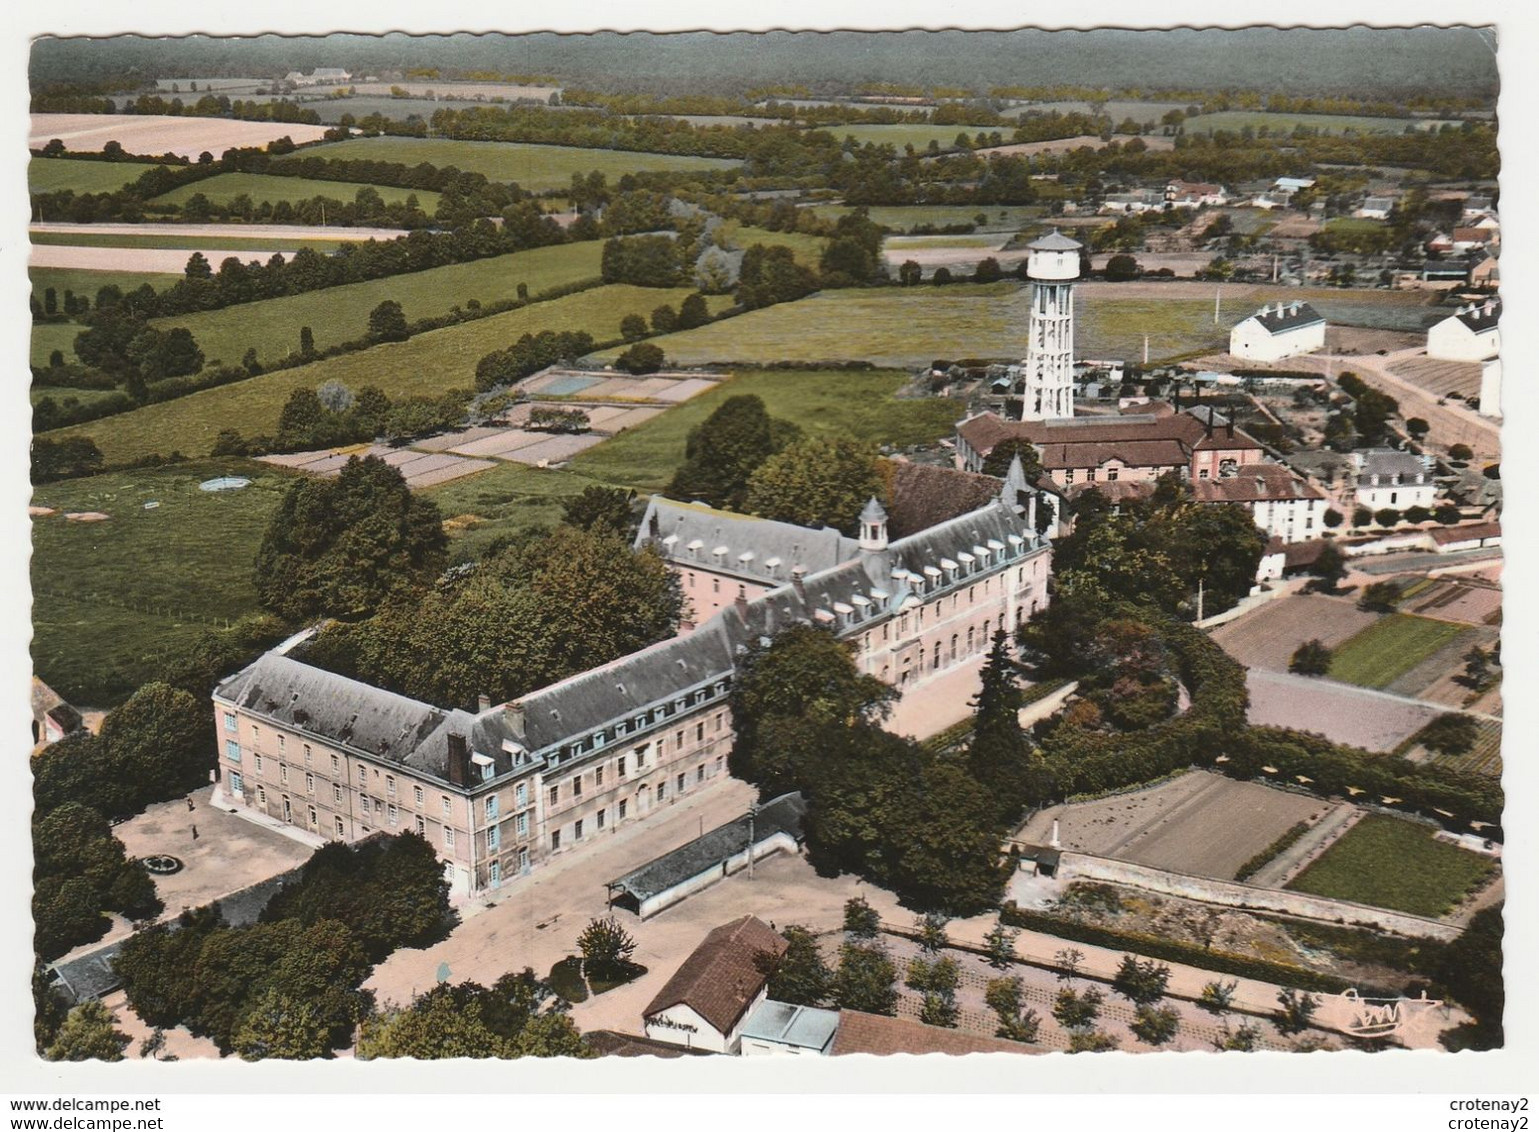 18 CHEZAL BENOIT Vers Lignères St Amand Montrond N°10.81 Ancien Collège Vue Aérienne Château D'eau VOIR DOS - Saint-Amand-Montrond